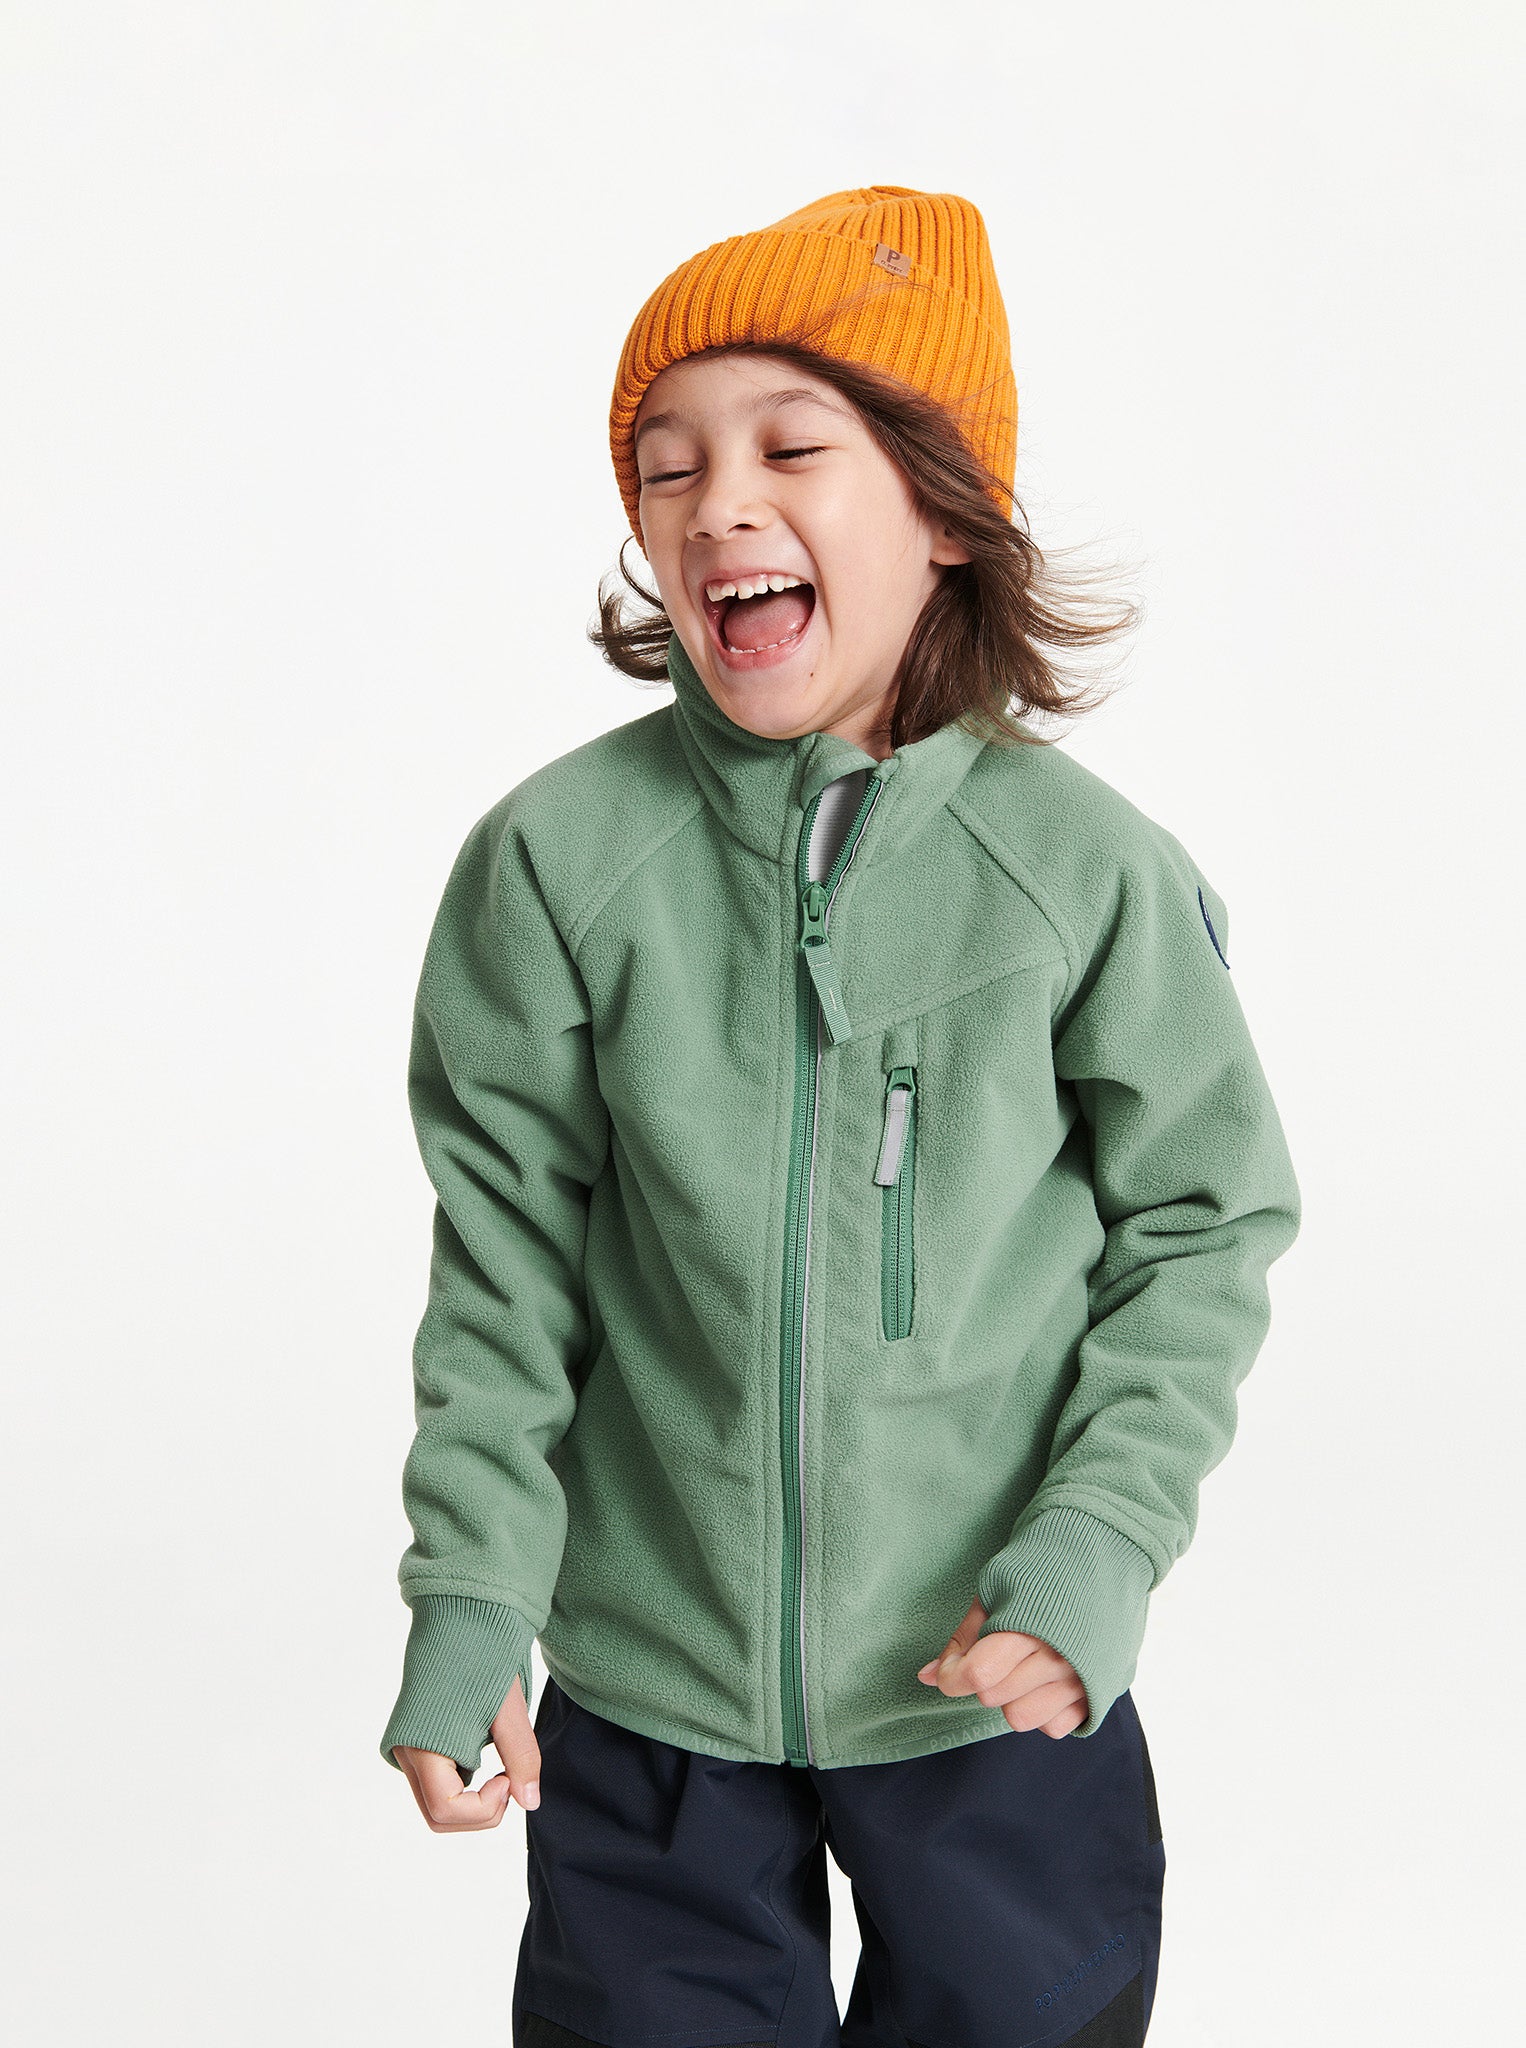 Waterproof Green Kids Fleece Jacket | Polarn O. Pyret UK